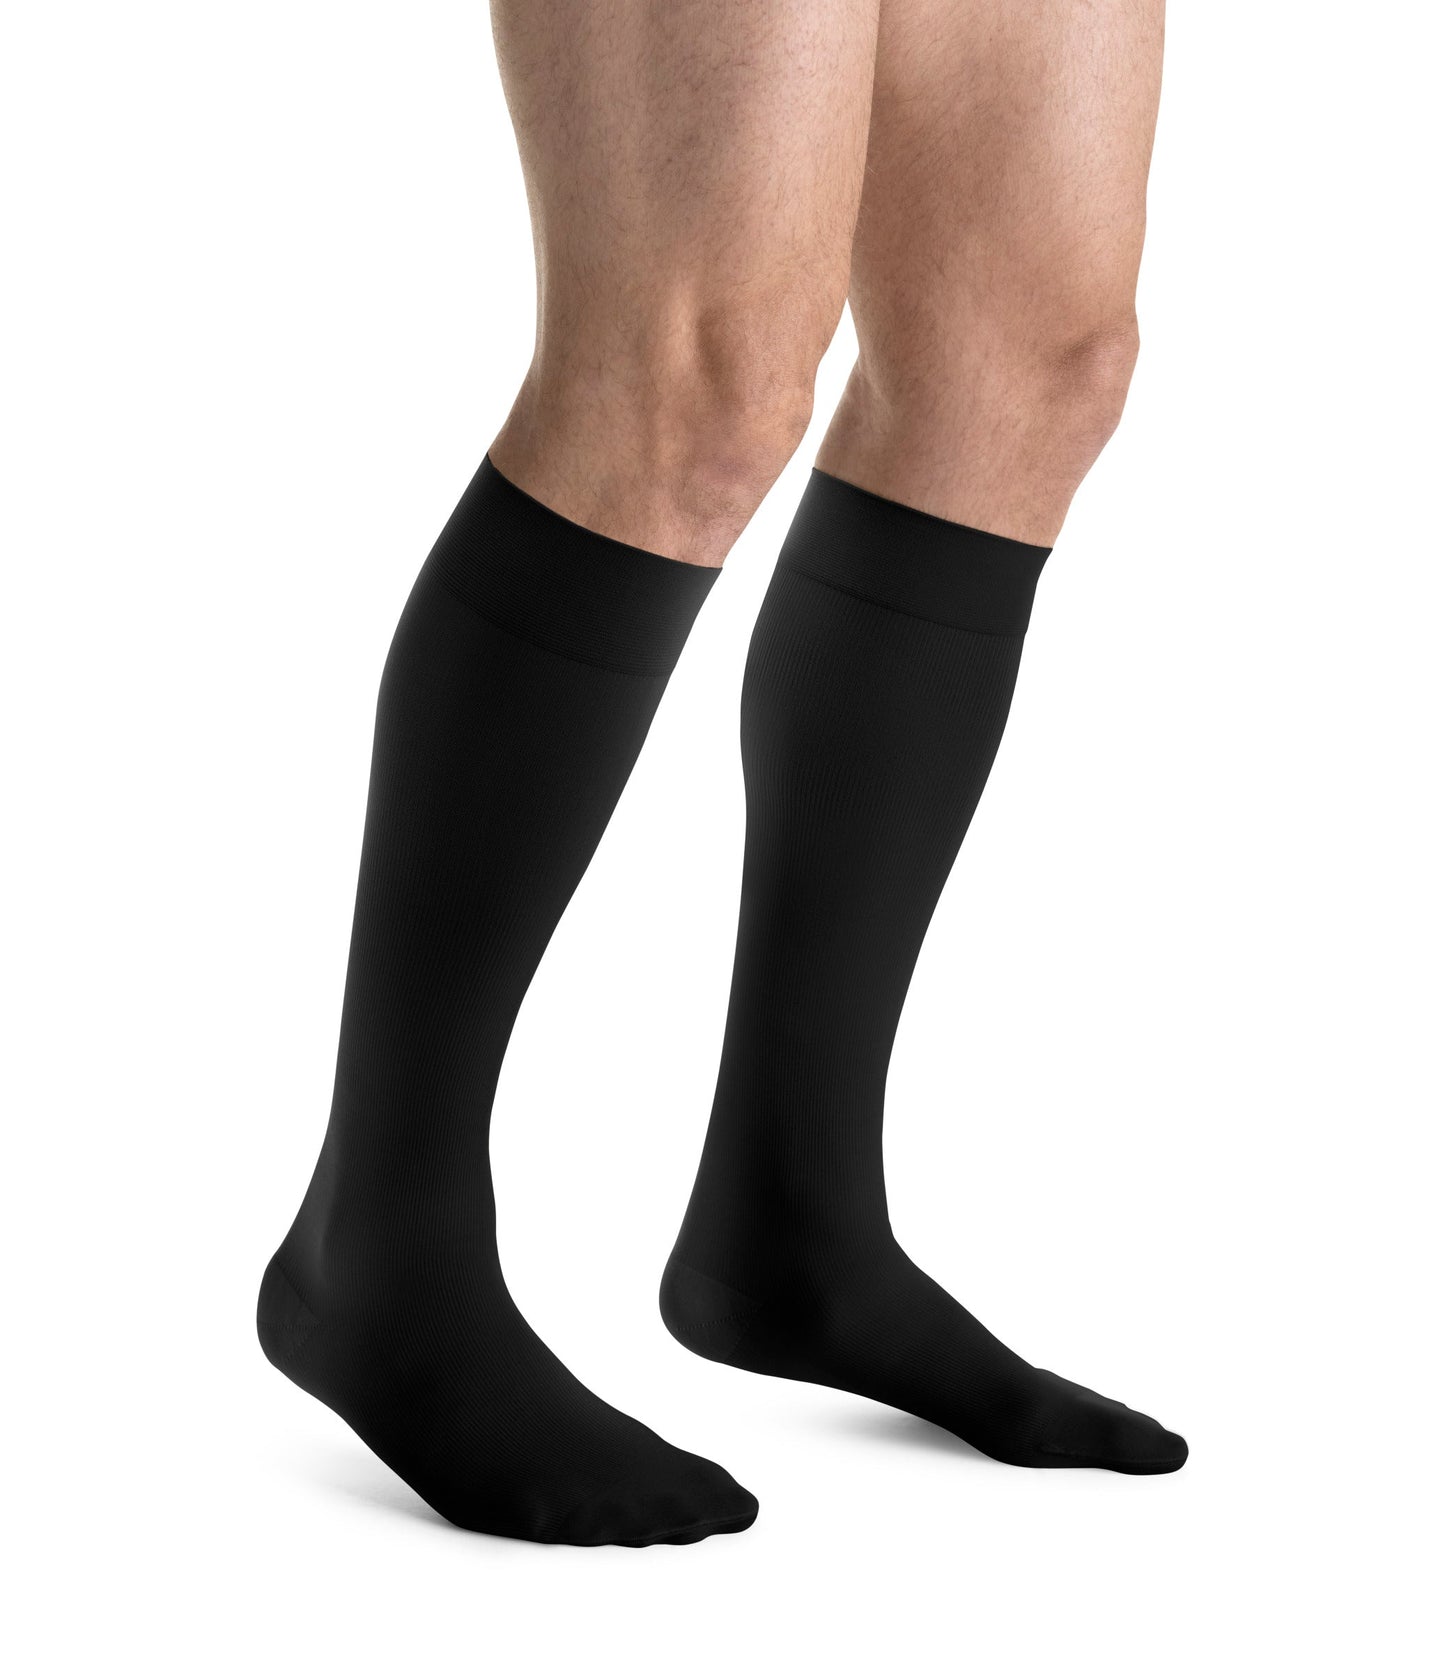 JOBST forMen Compression Socks 15-20  mmHg Knee High Tall Closed Toe